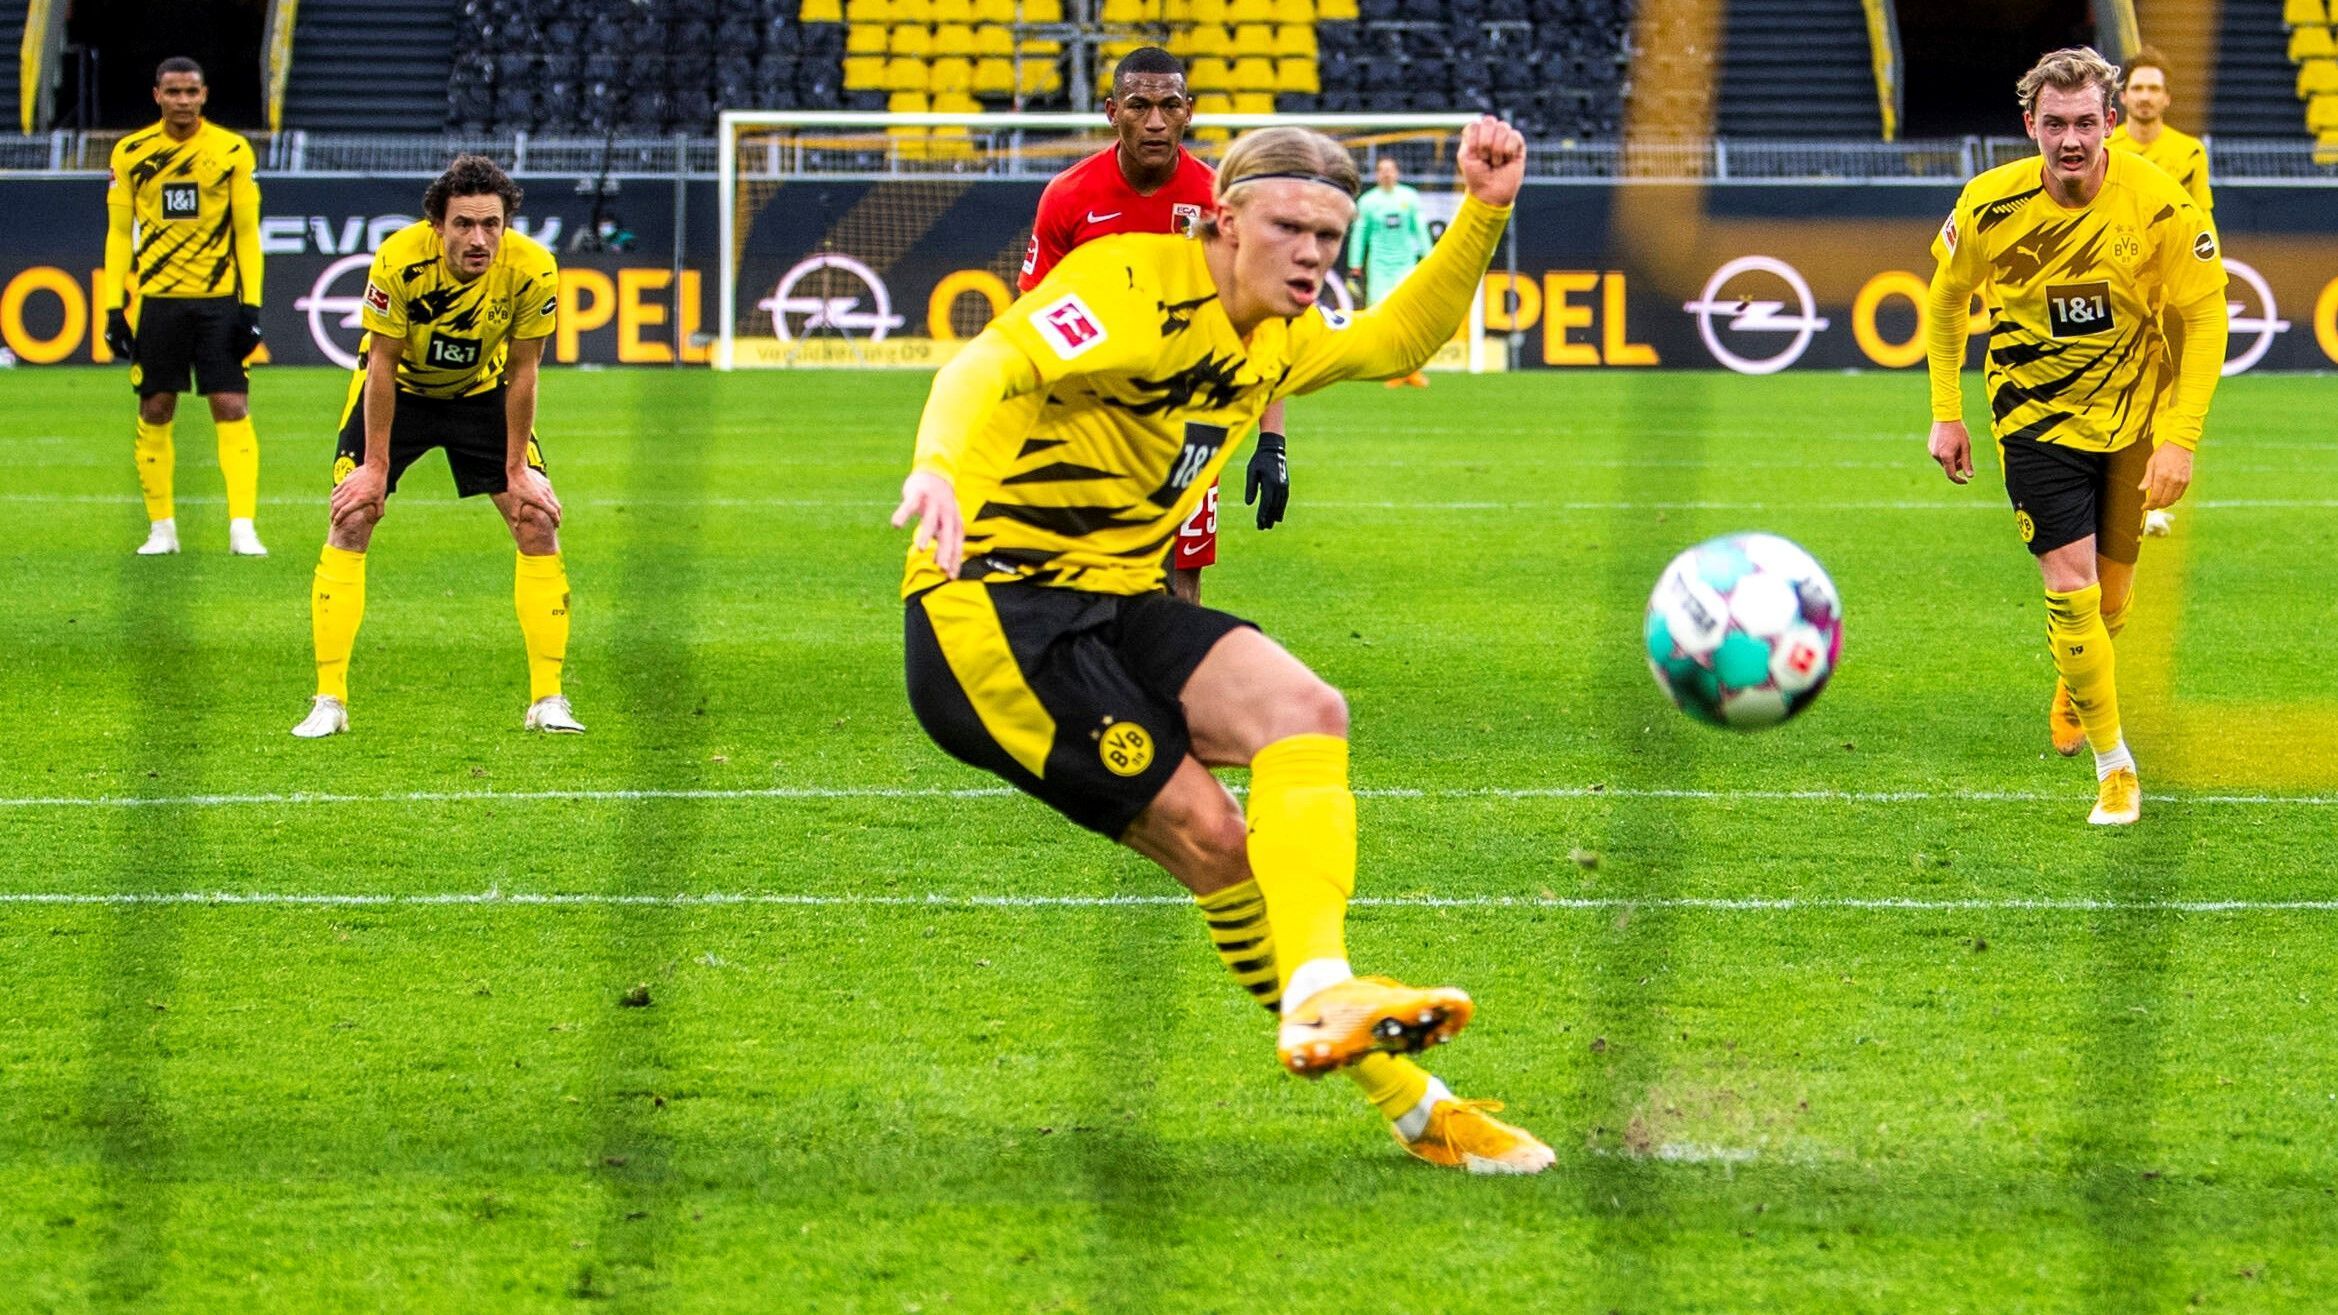 
                <strong>Platz 4: Borussia Dortmund</strong><br>
                Für die Hochbegabten aus Dortmund dürfte der Ligasieg gegen Augsburg in mehrfacher Hinsicht belebend gewirkt haben. Zu einem verhinderten die Dortmunder einen weiteren Absturz, zum anderen bewiesen sie sich, dass sie auch gegen vermeintlich kleine Gegner bestehen können. Diese hatten die eigentlich sehr flinken Dortmunder in dieser Saison häufig mit tiefstehenden Defensivreihen ausgebremst. Im Pokal erwartet den BVB nun wieder ein Gegner aus der unteren Kategorie: der Zweitligist SC Paderborn. Es wird sich zeigen, ob das Team von Edin Terzic einen Trend gründen kann - oder in alte Muster verfällt. 
              